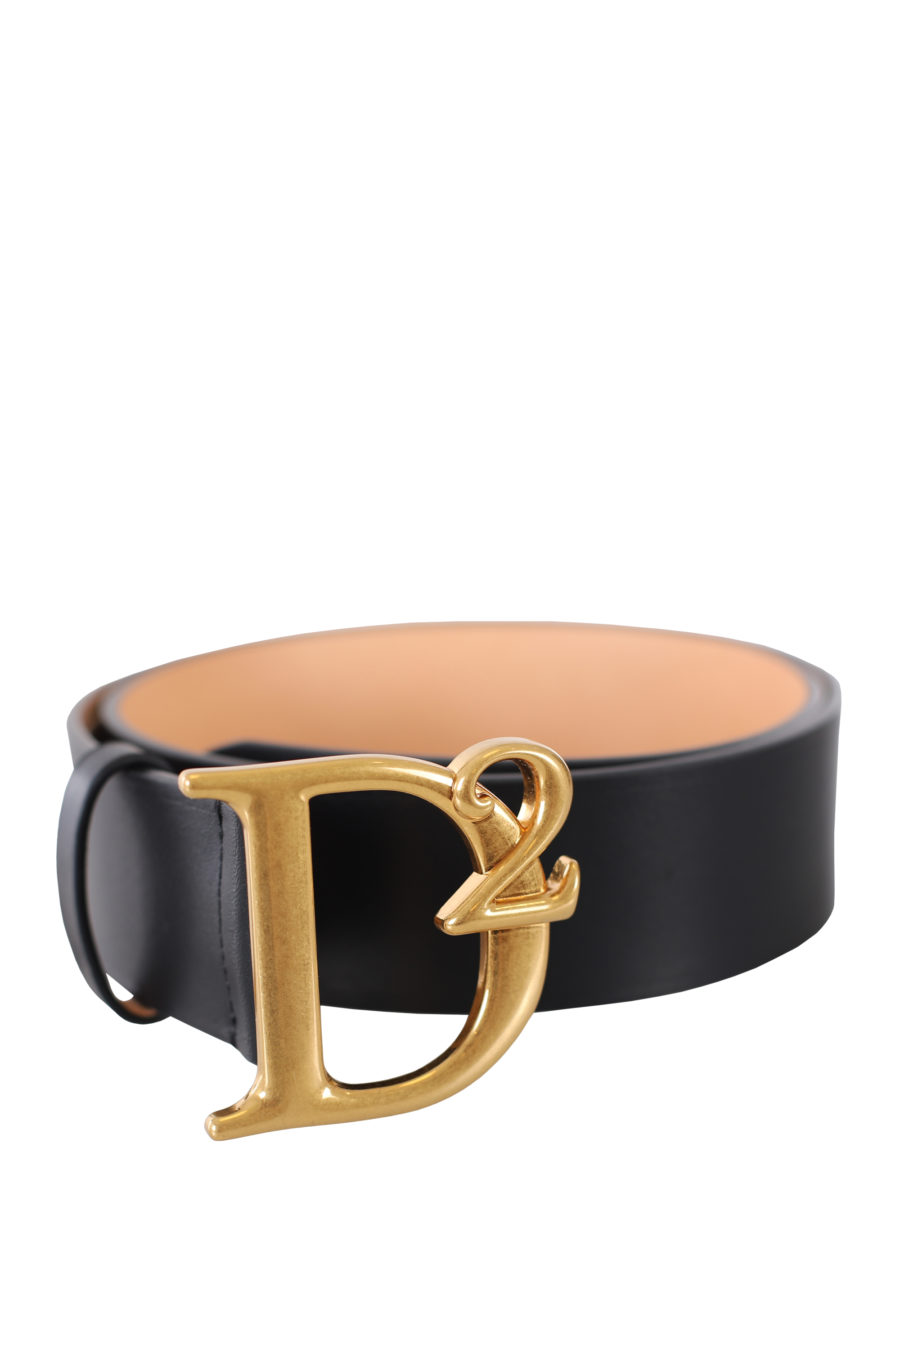 Cinturón negro con logo "D2" dorado - IMG 9408